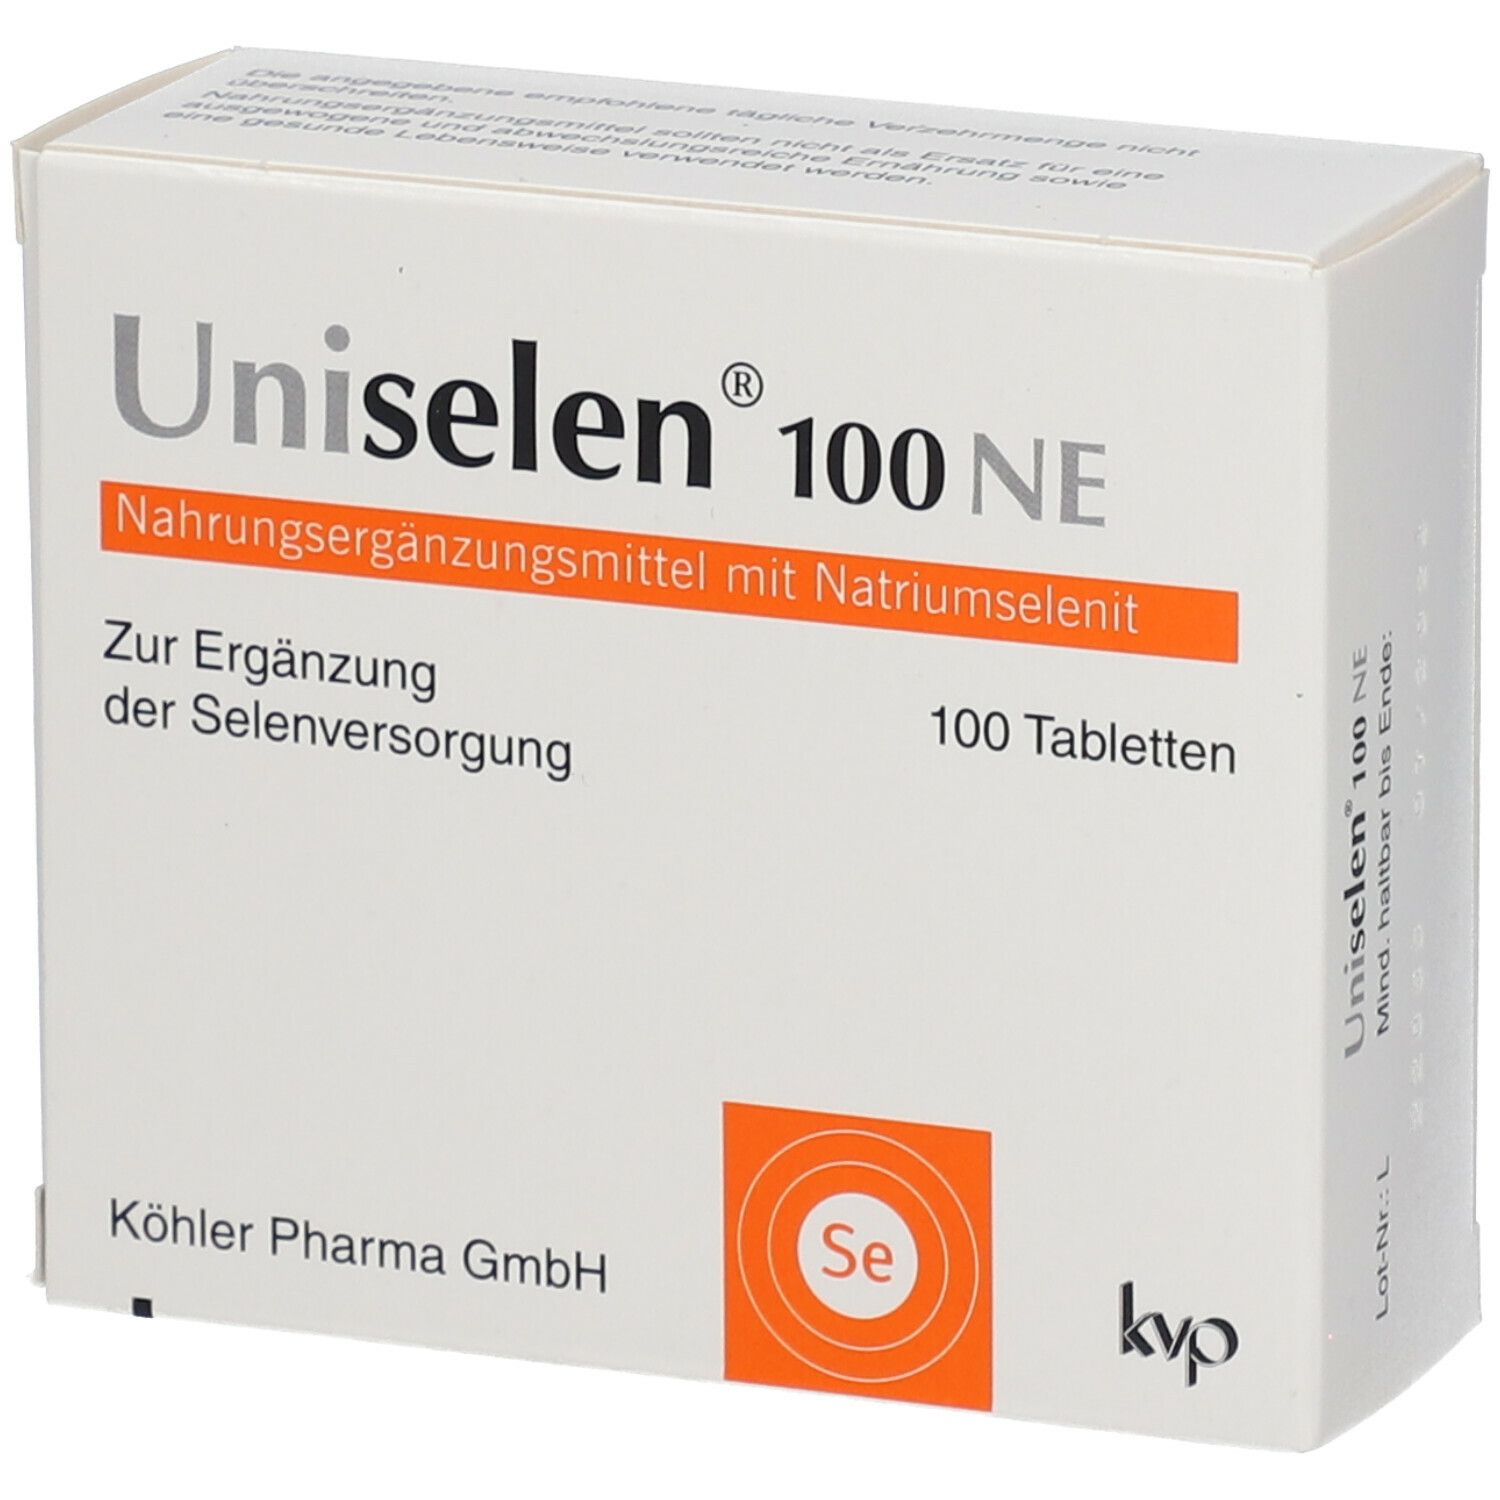 Uniselen® 100 NE Tabletten